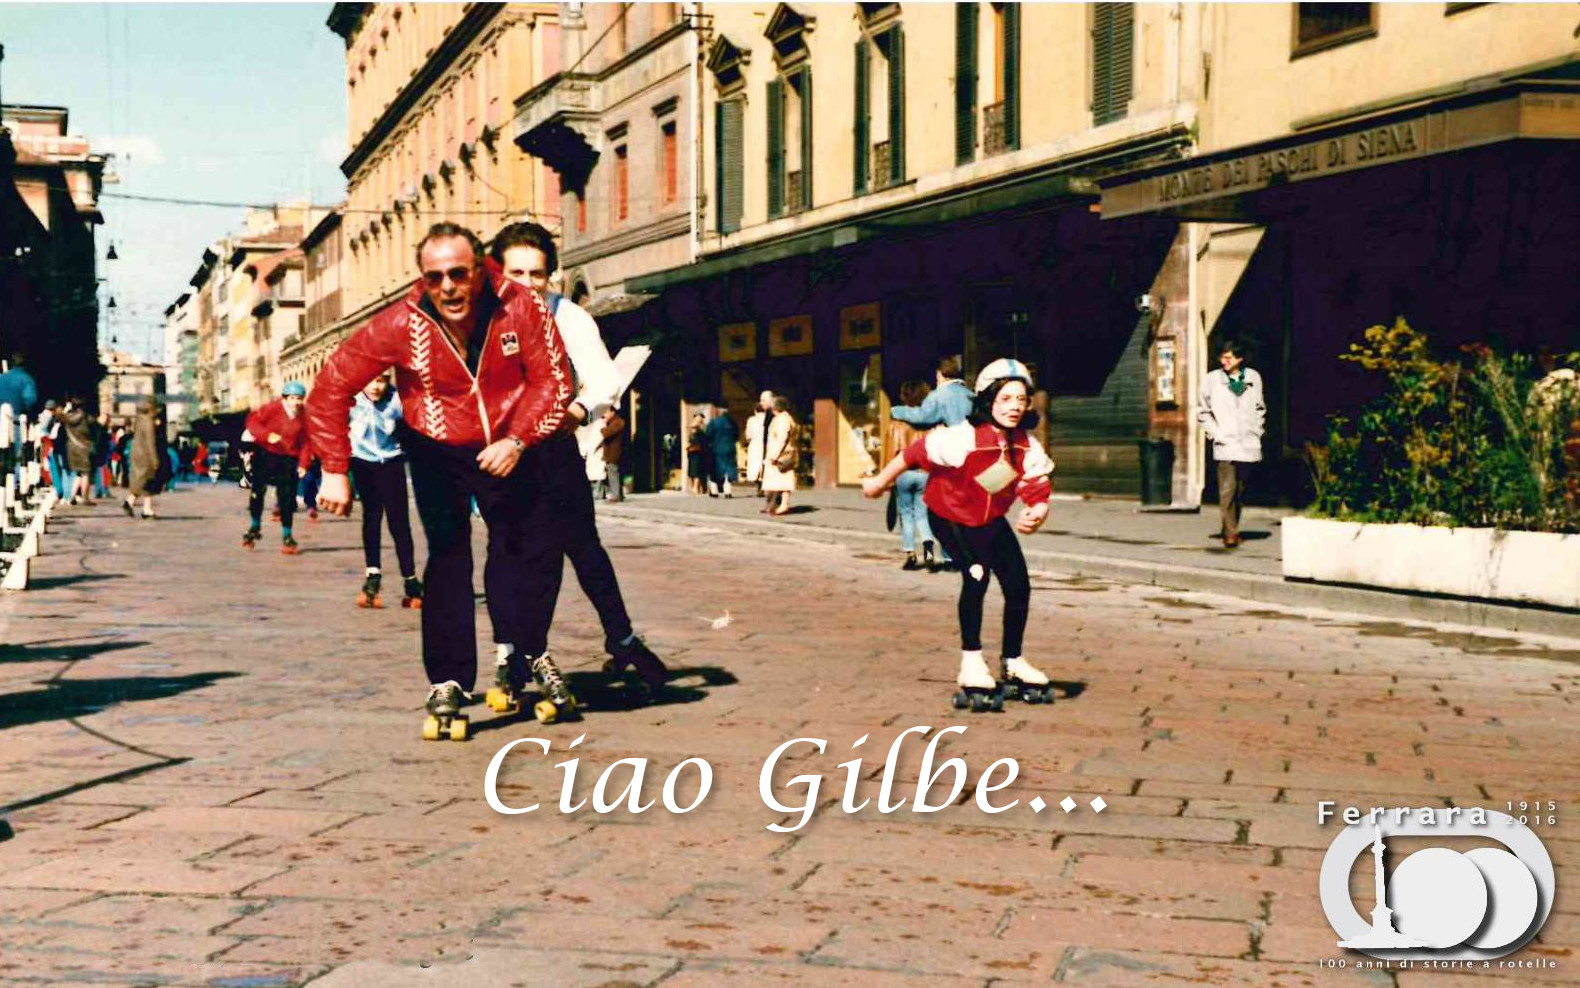 Ciao Gilbe... una raccolta per ADO-Palestra Ginnastica Ferrara a.s.d.